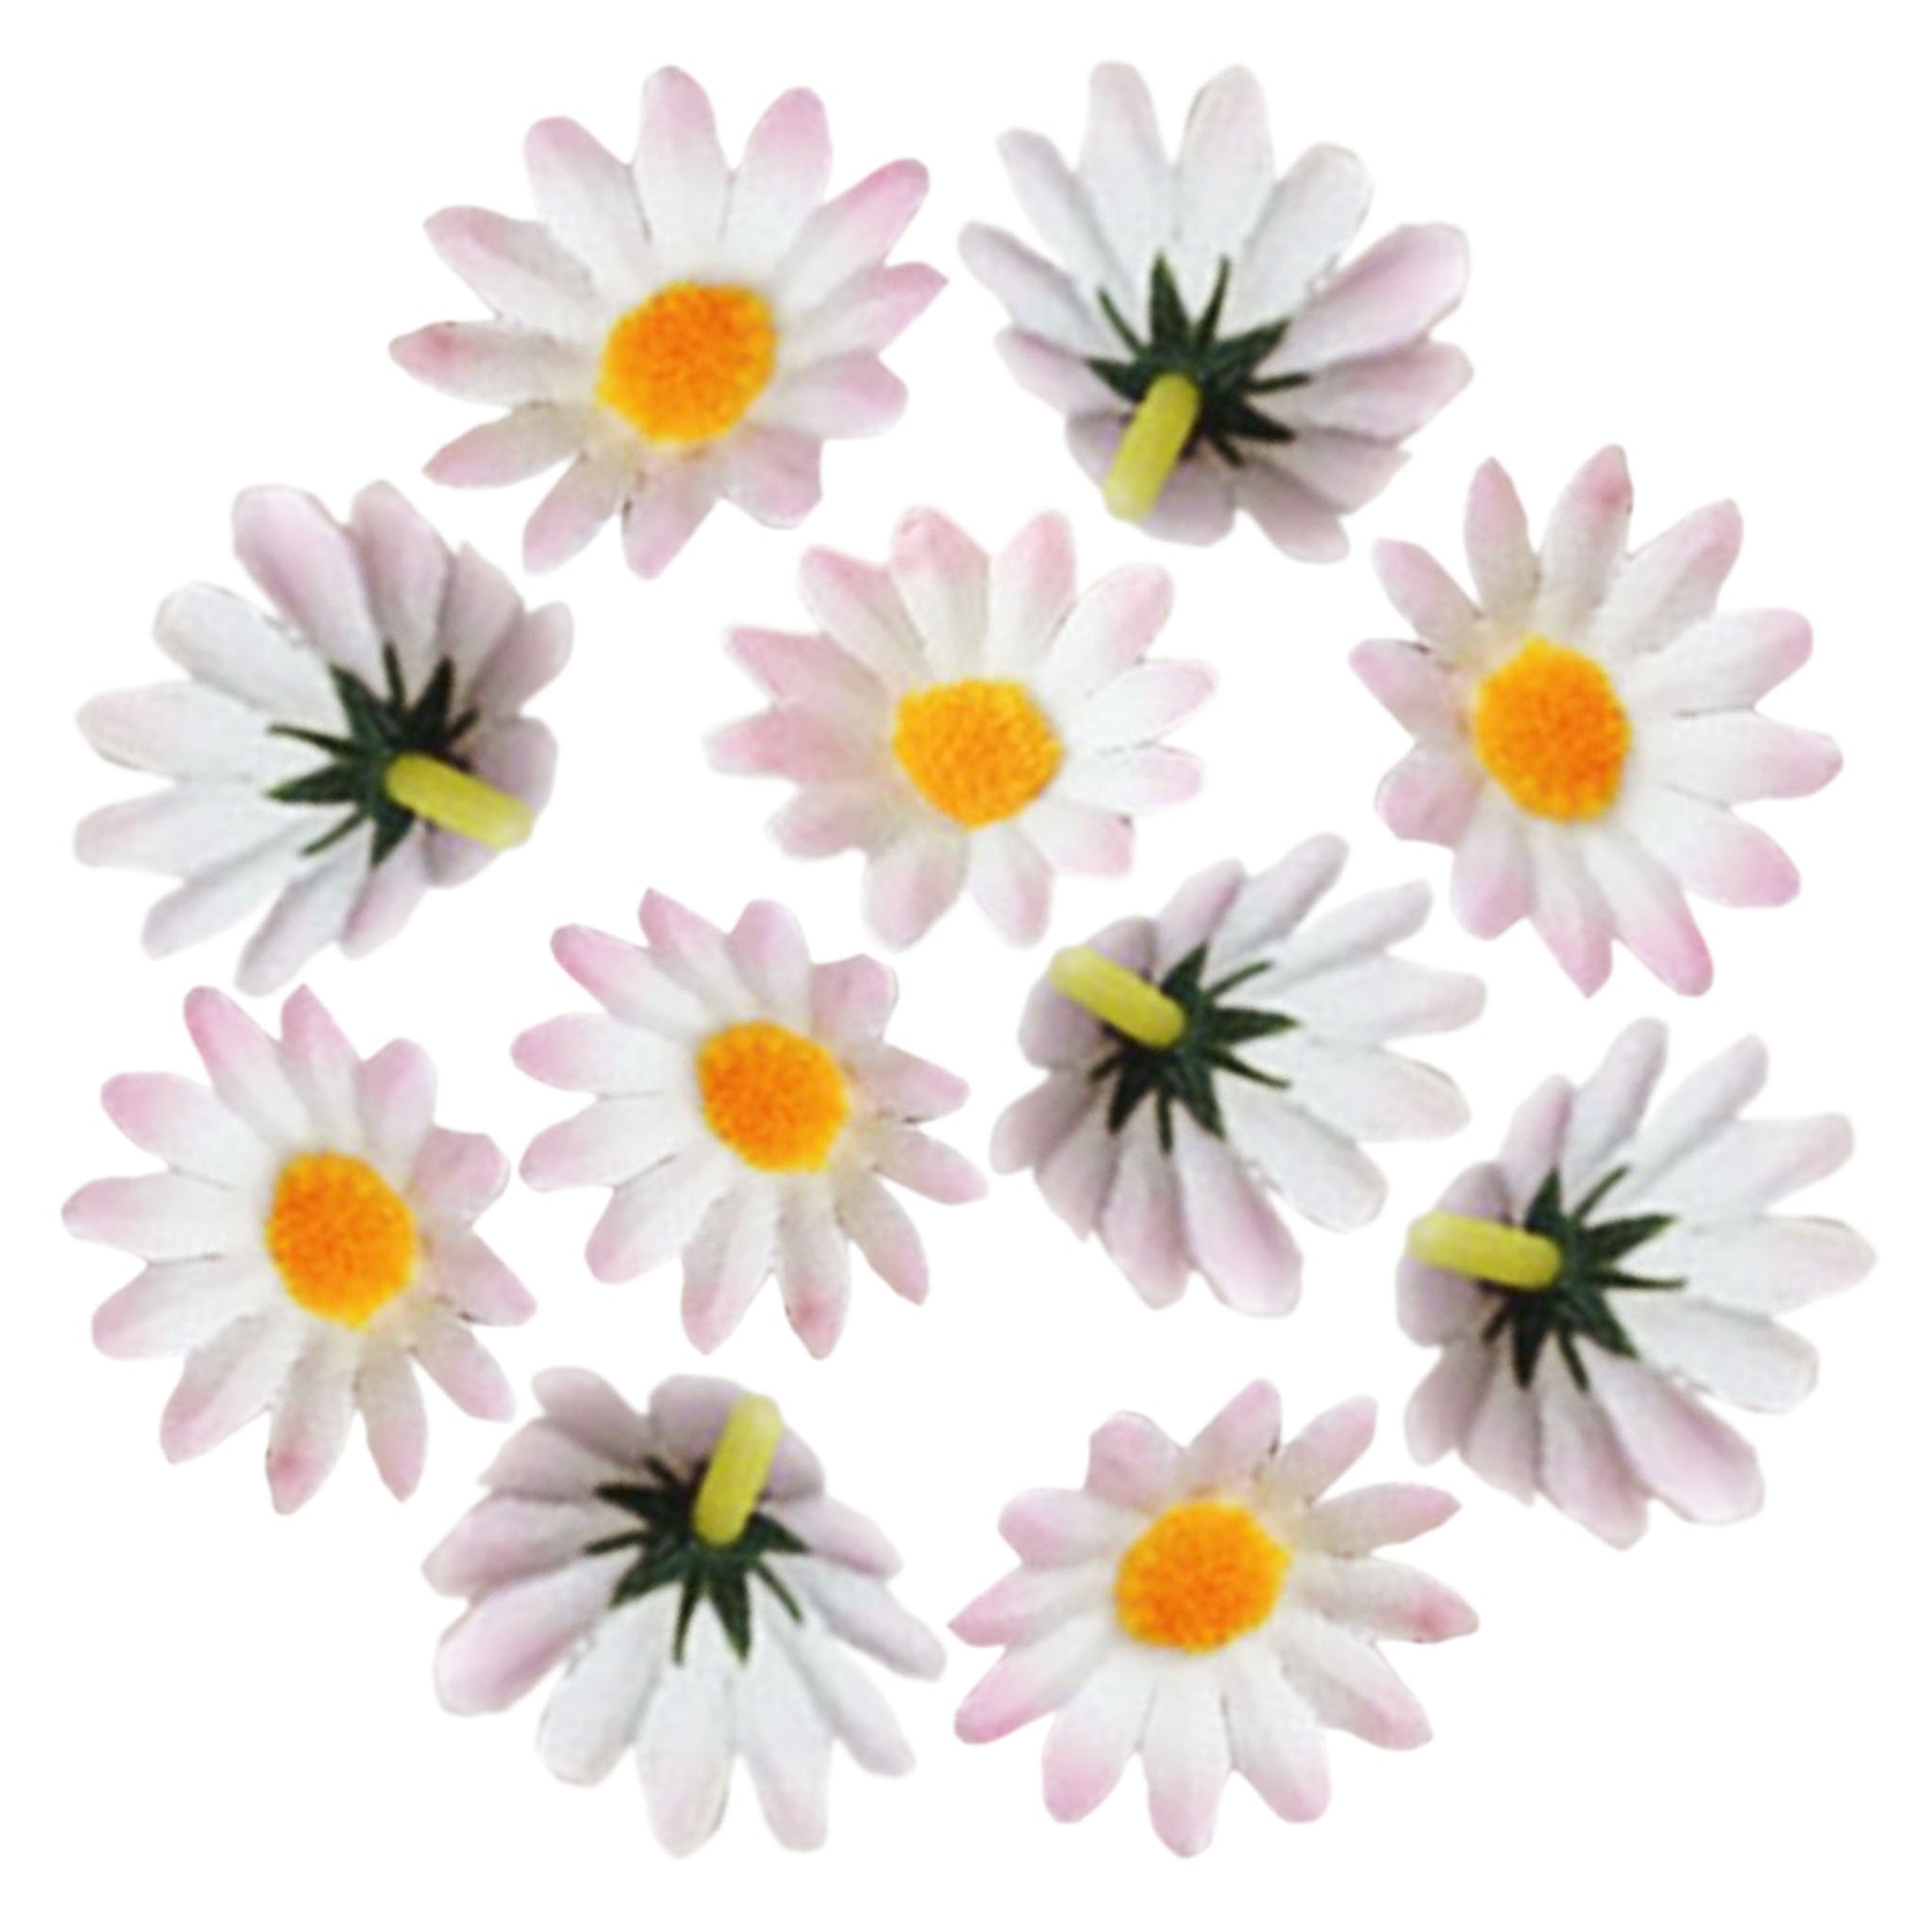 Silk Gerbera Daisy Mini Flowers 100pcs